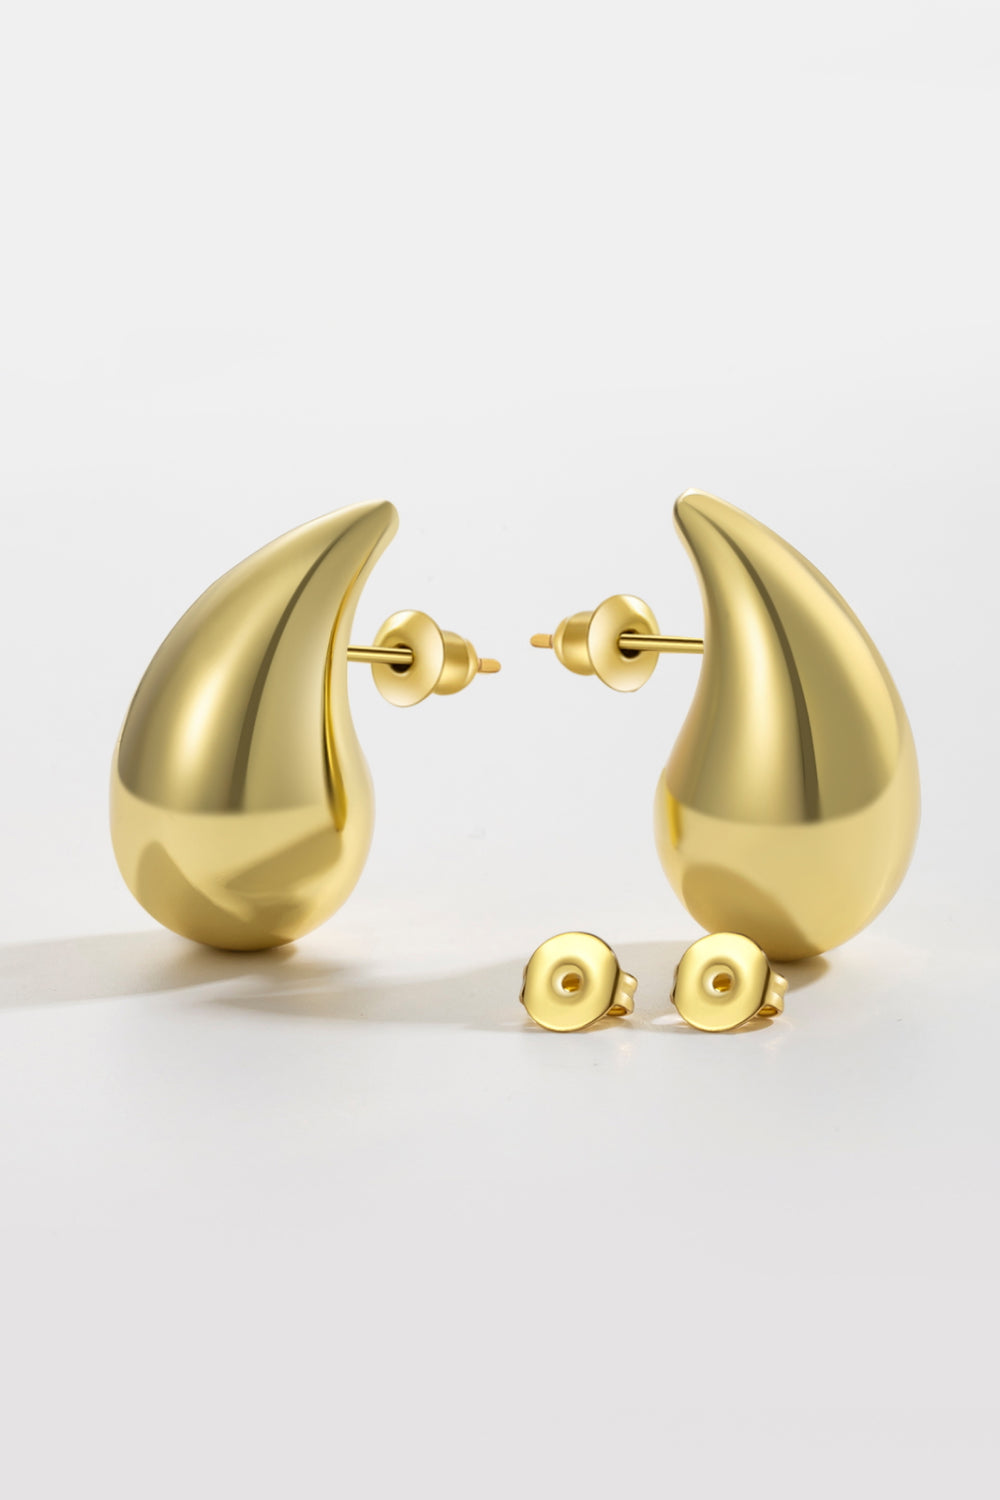 Large Size Water Drop Brass Earrings